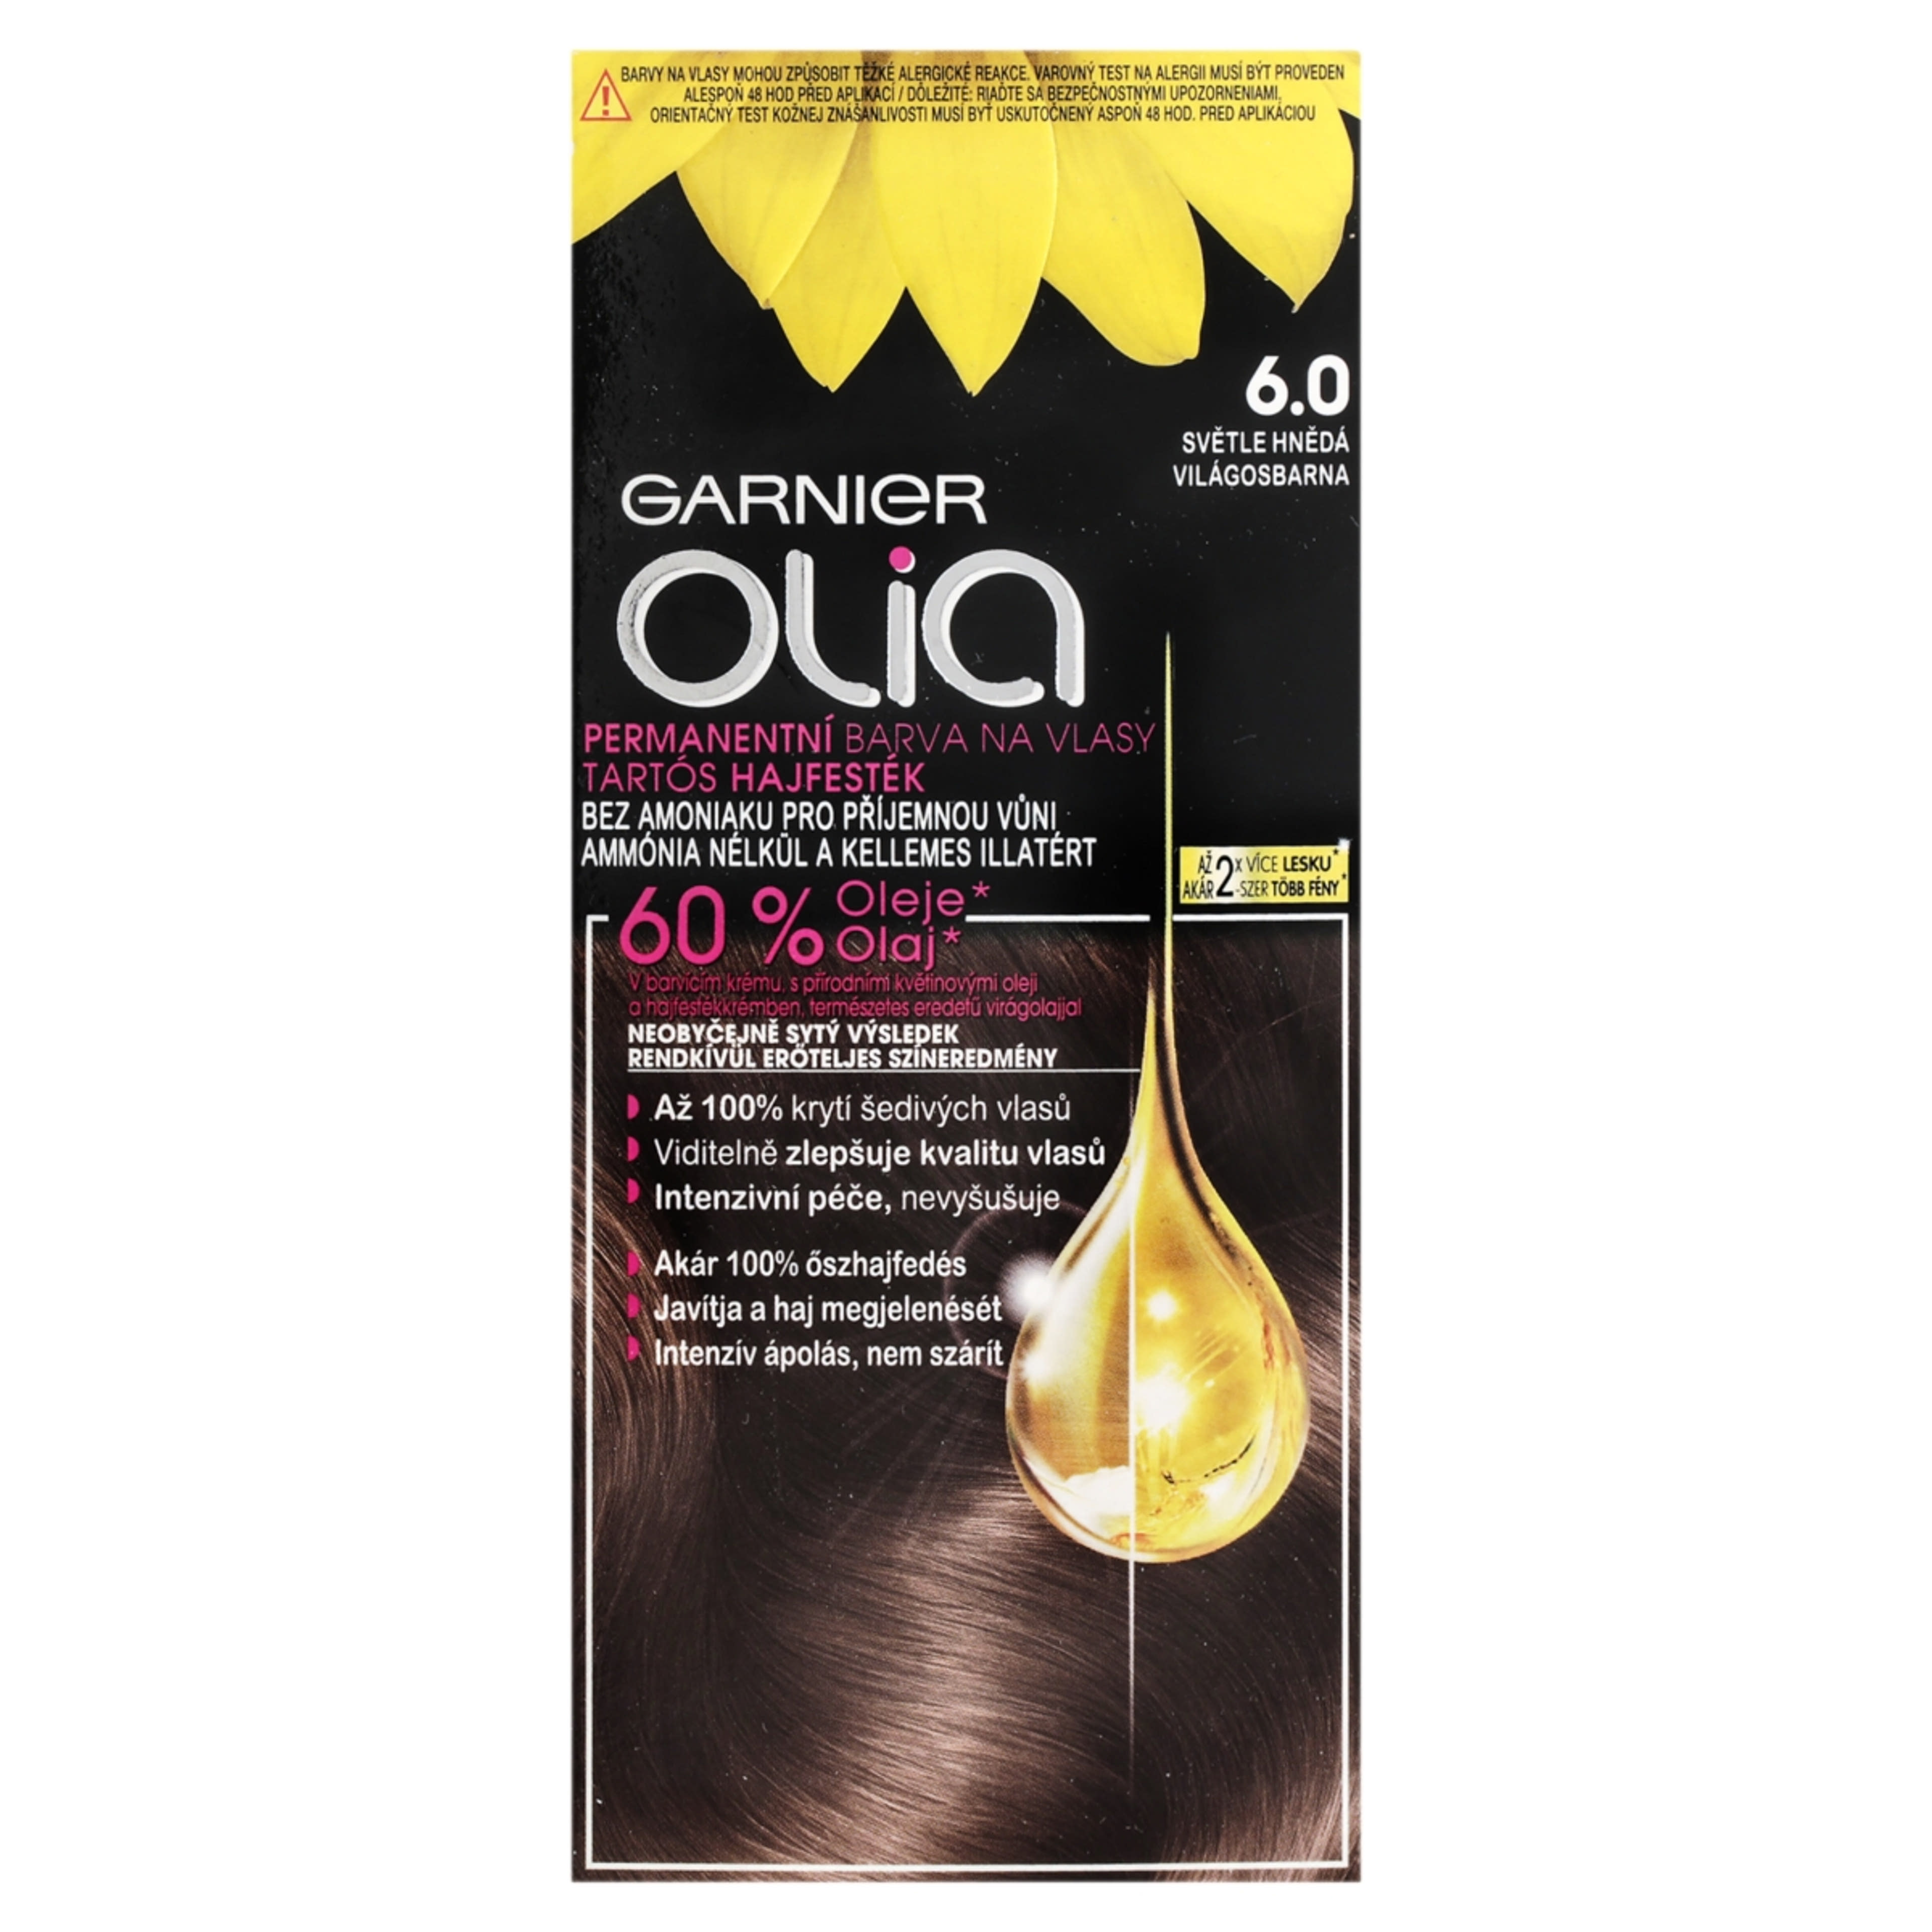 Garnier Olia tartós hajfesték 6.0 Világosbarna - 1 db-3